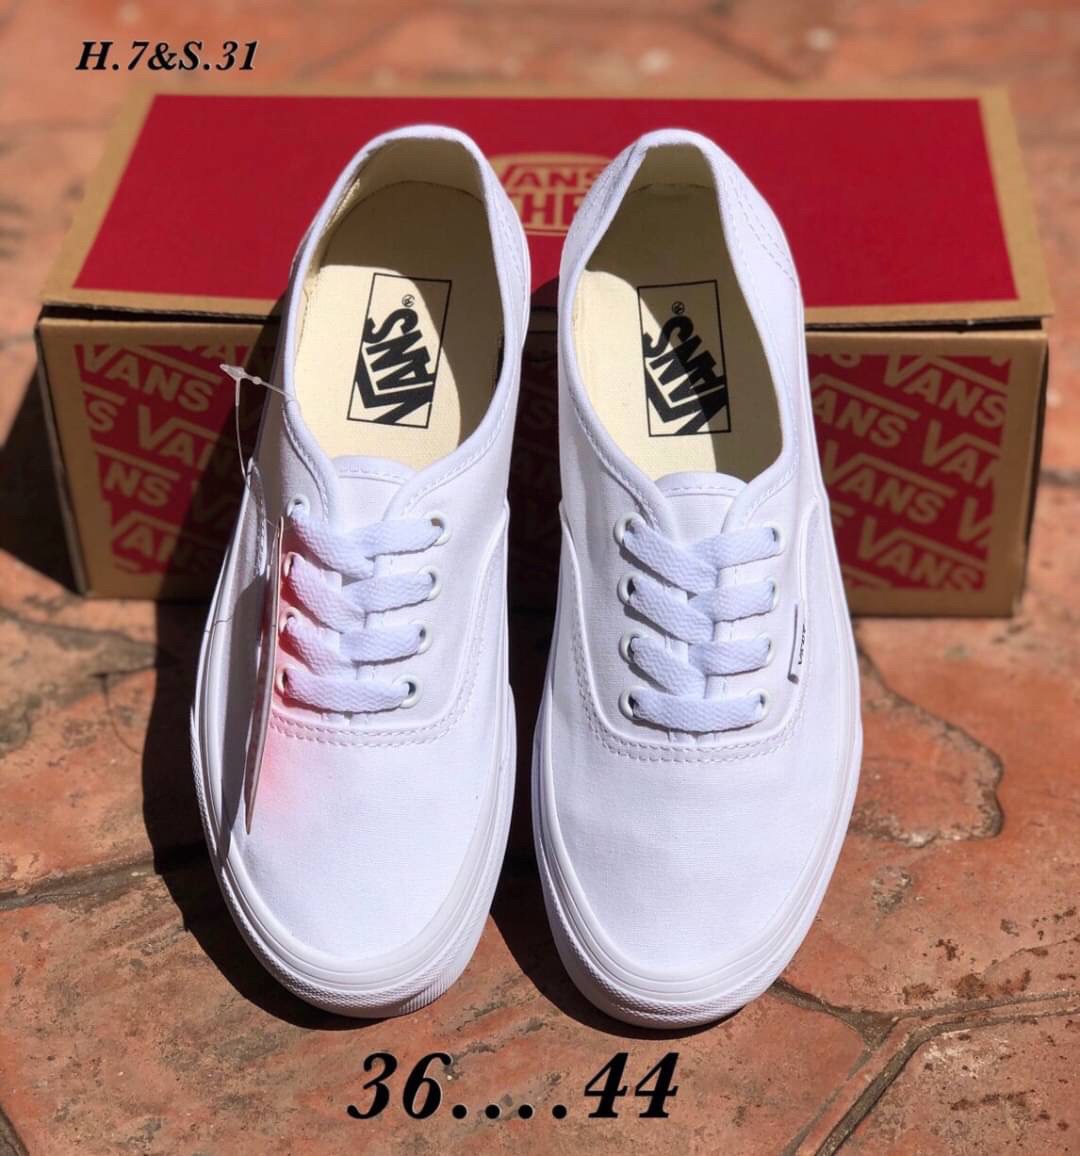 [MShose] รองเท้าVANS Authentic Classic size : 36-44 รองเท้าลำลอง รองเท้าแฟชั่น สินค้าพร้อมกล่อง